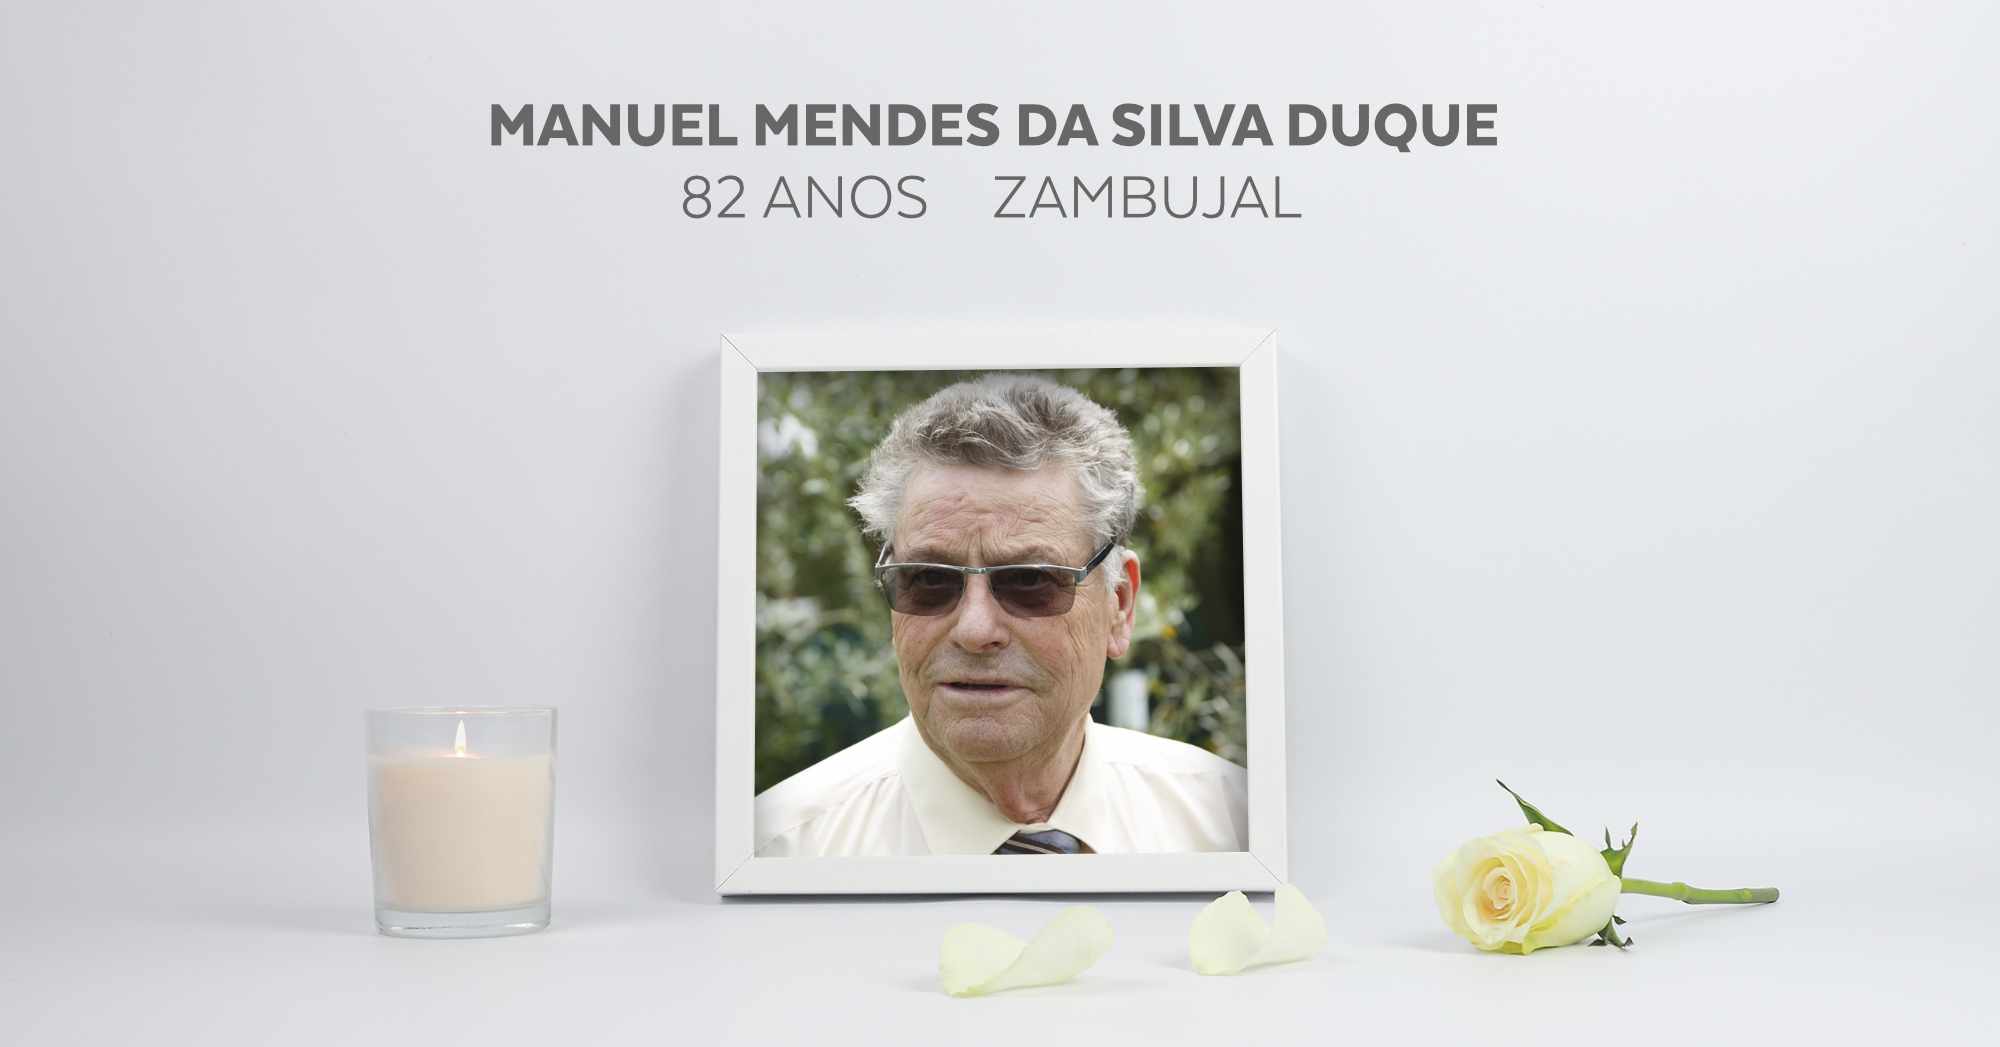 Manuel Mendes da Silva Duque